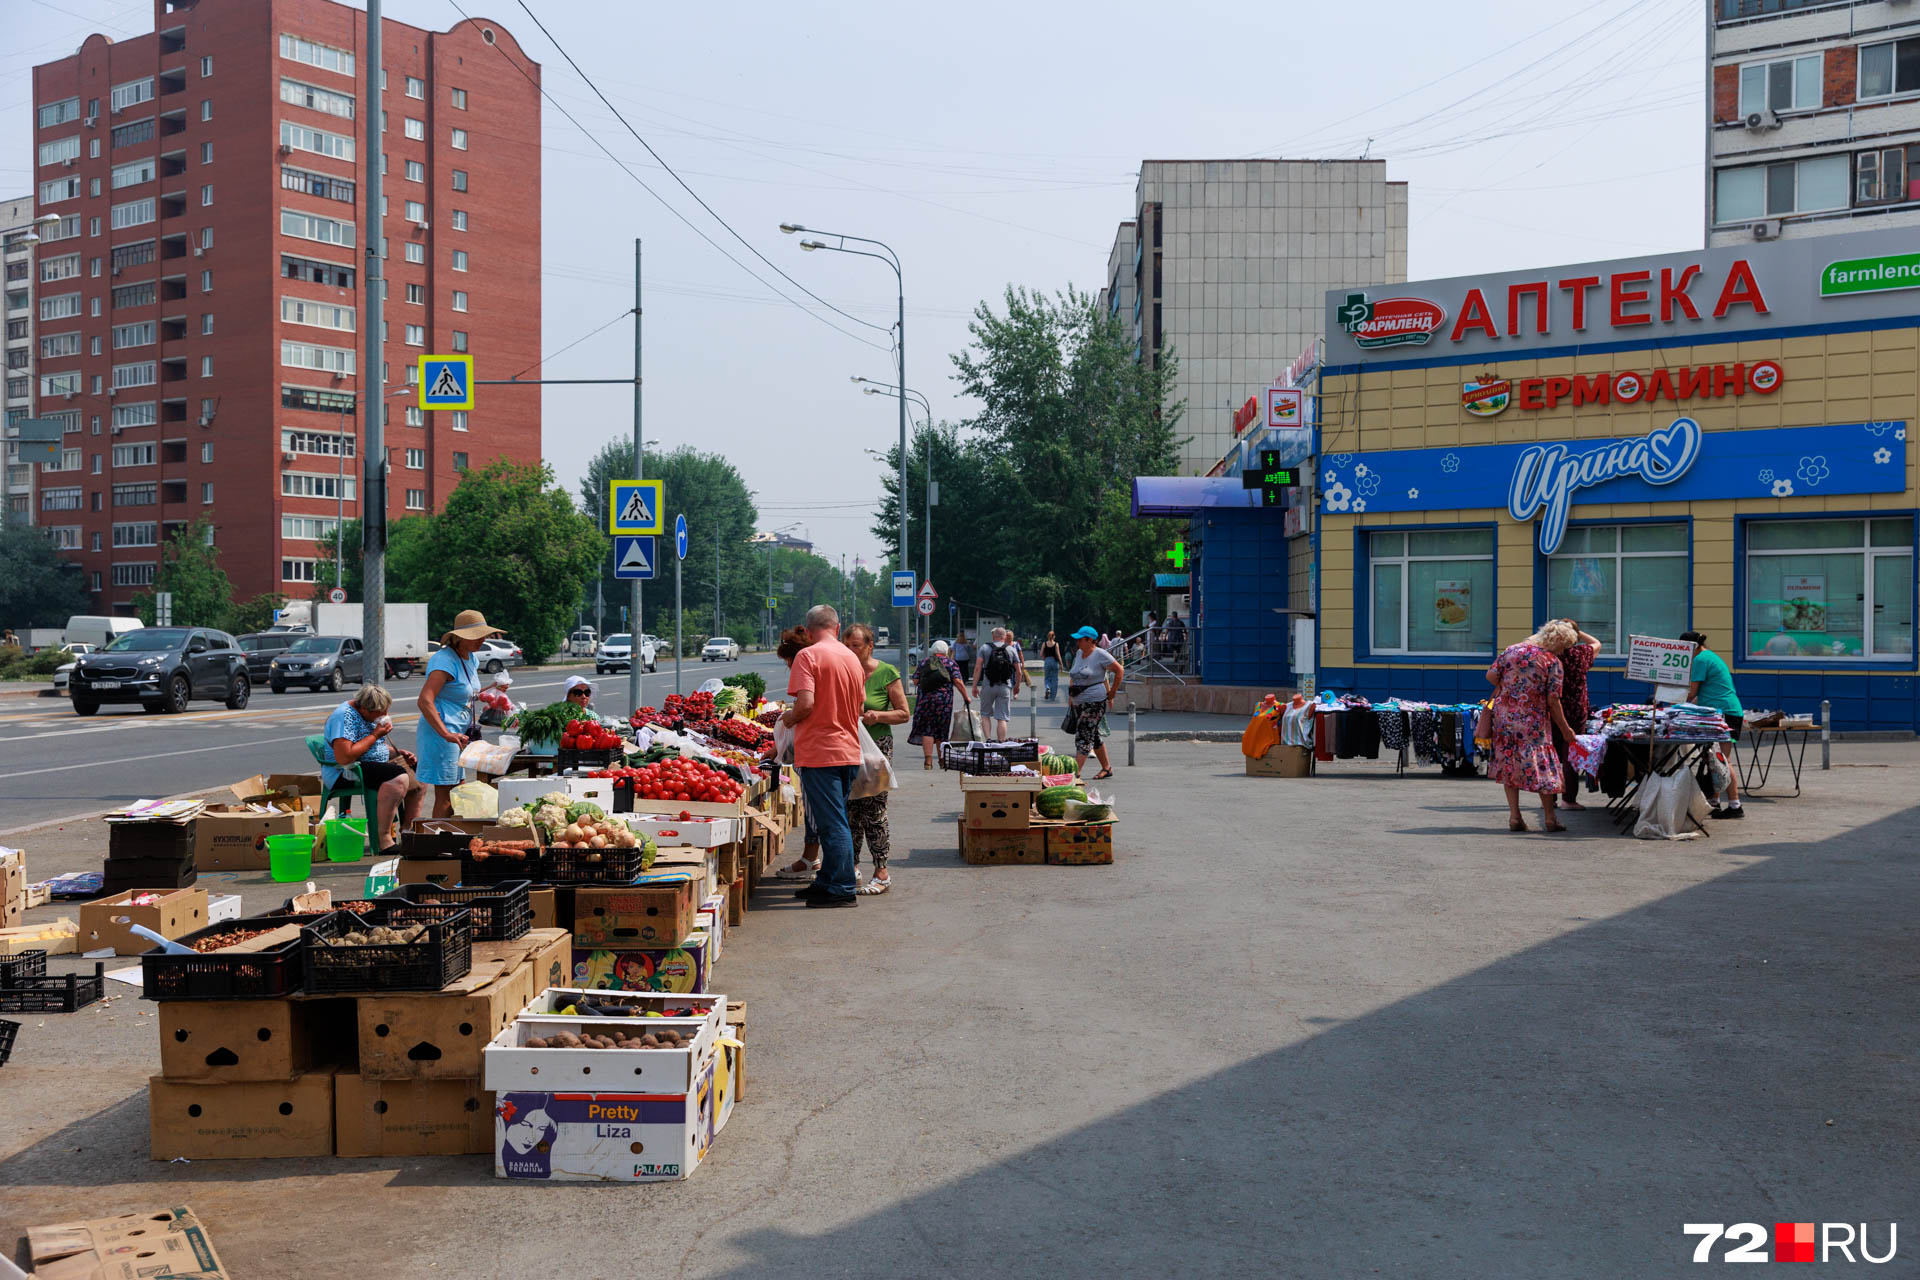 Продажа овощей и фруктов на улице недалеко от пансионатов процветает. Власти не очень любят таких торговцев, но клиентов у них много